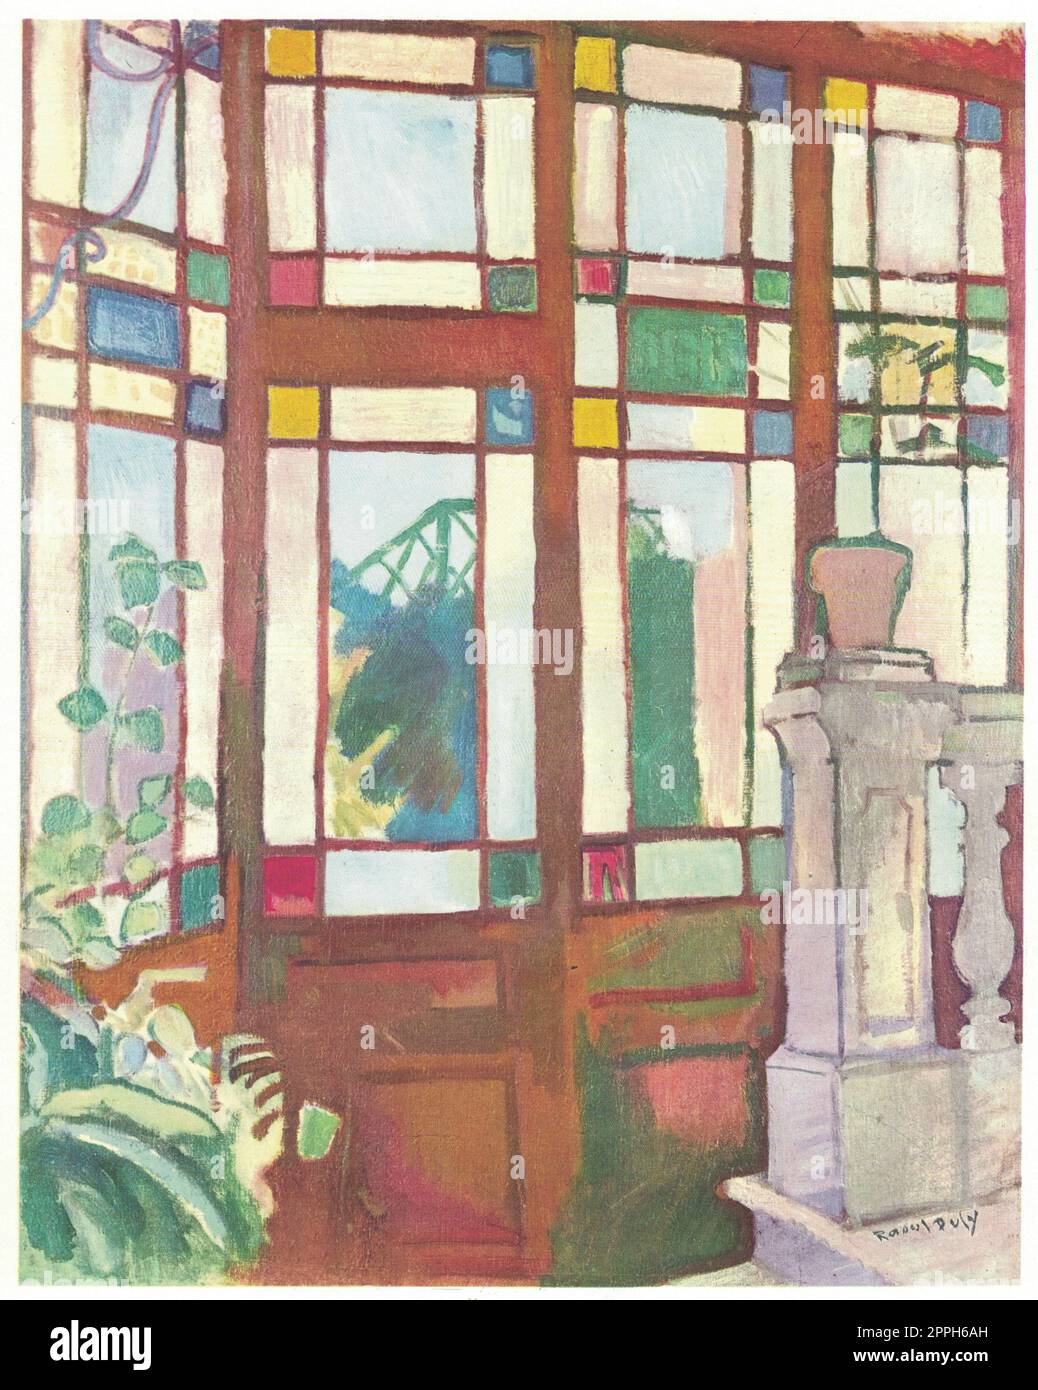 Fenster mit farbigen Gläsern, 1906. Gemälde von Raoul Dufy. Raoul Dufy, 3. Juni 1877 bis 23. März 1953, war ein französischer fauvistischer Maler, Bruder von Jean Dufy. Er entwickelte einen farbenfrohen, dekorativen Stil, der für Keramik- und Textildesigns modisch wurde, Stockfoto